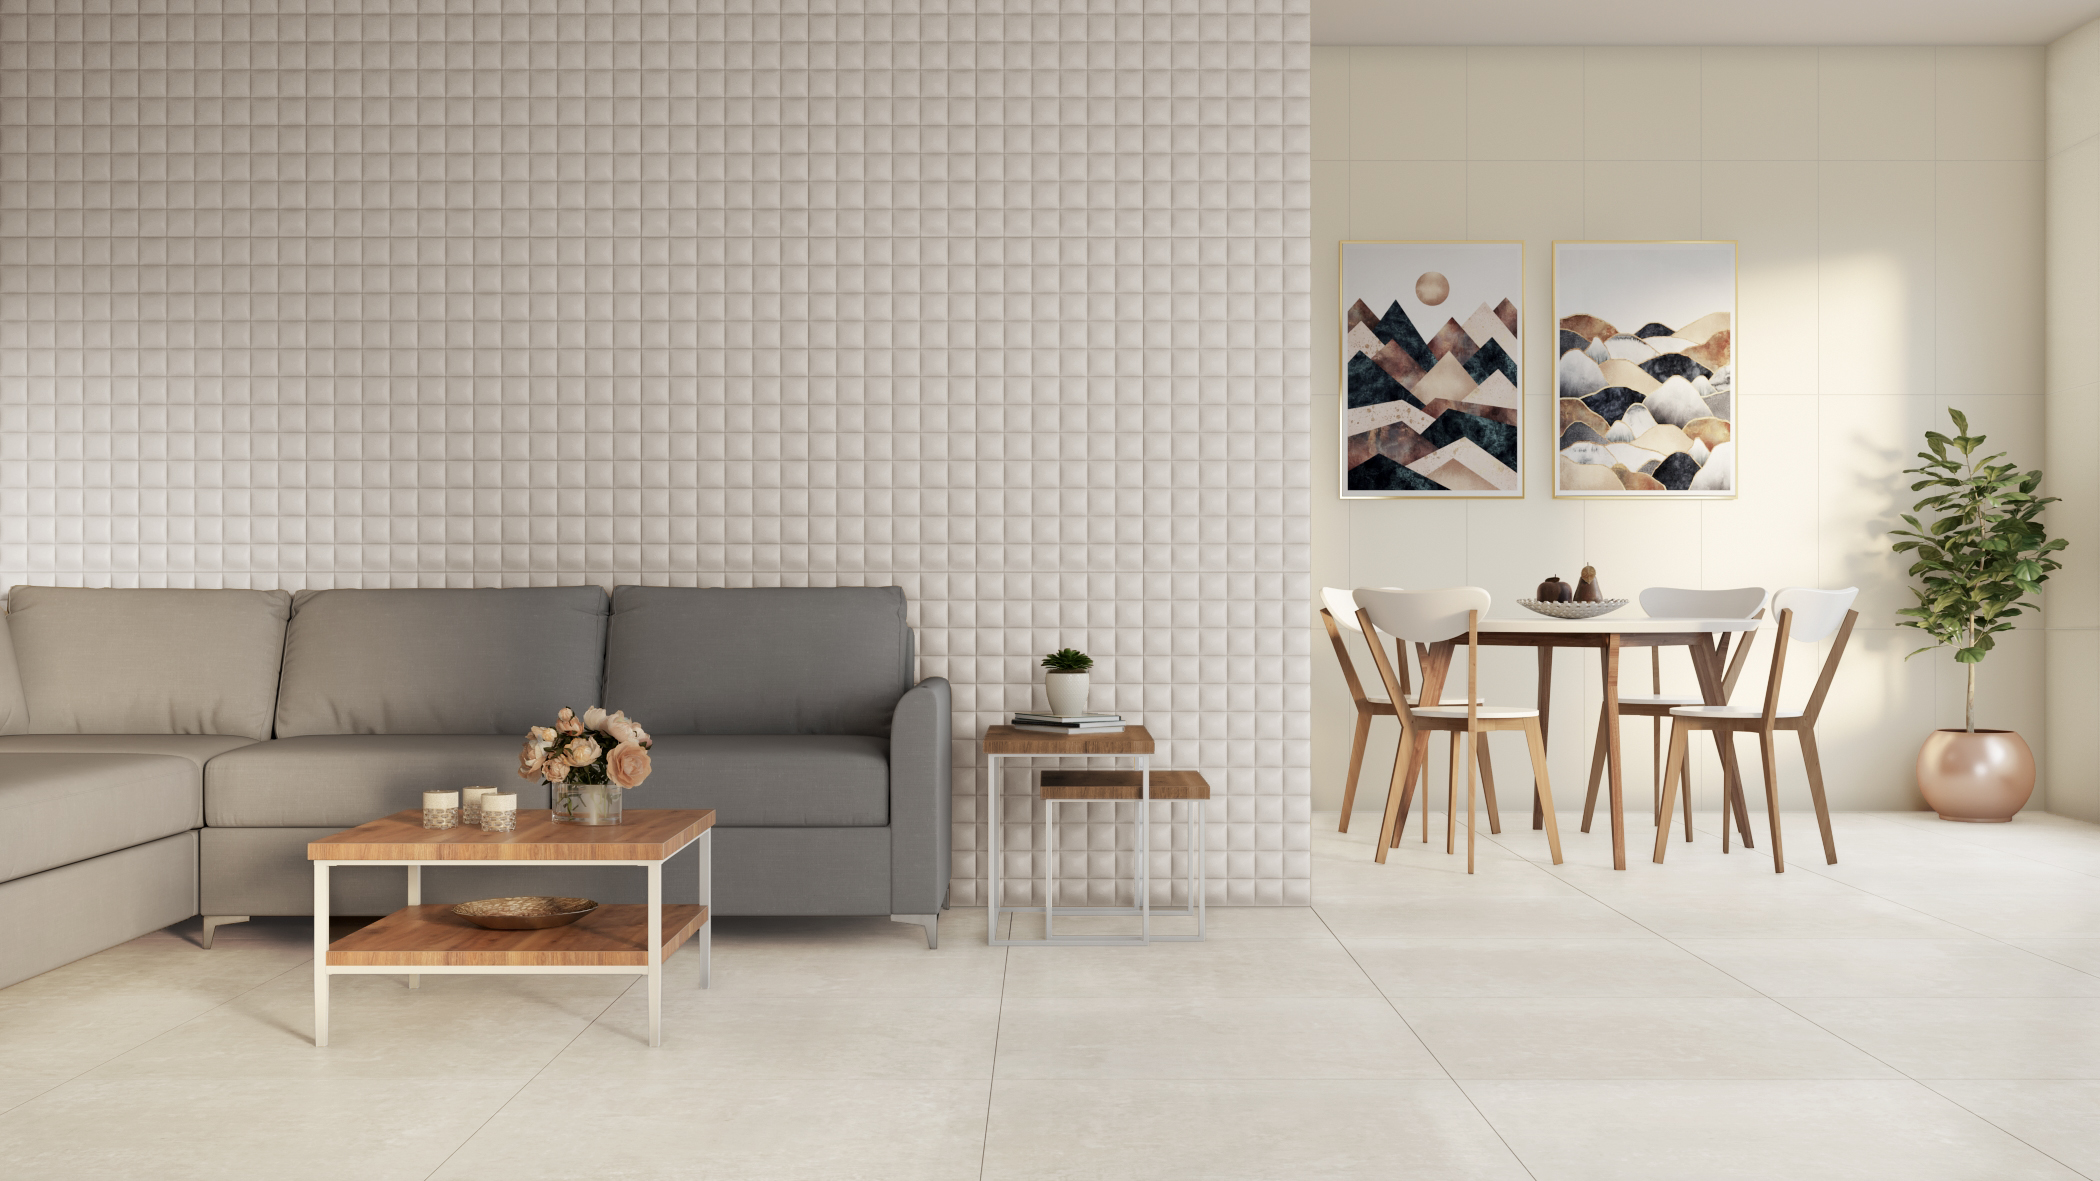 Vitoria Gris, da linha Decora Design, na parede atrás do sofá neutro, agrega relevo ao ambiente e promove contraste com o móvel. No piso, Zeppelin Gray